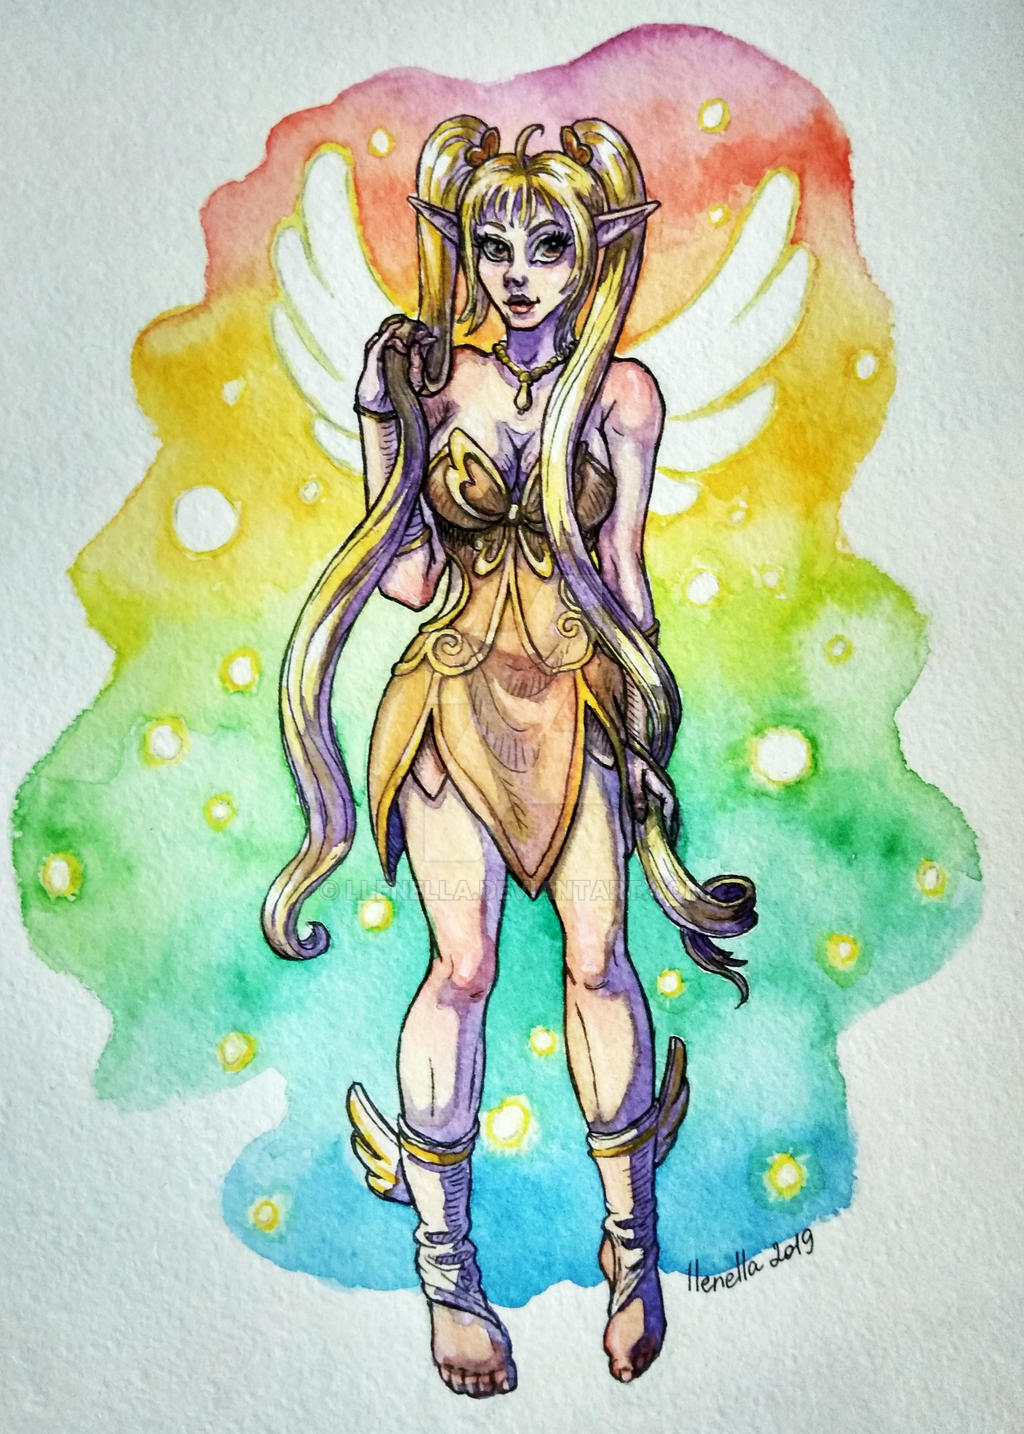 Fran - Light Fairy Queen (Summoners War fan art) by llenella on DeviantArt